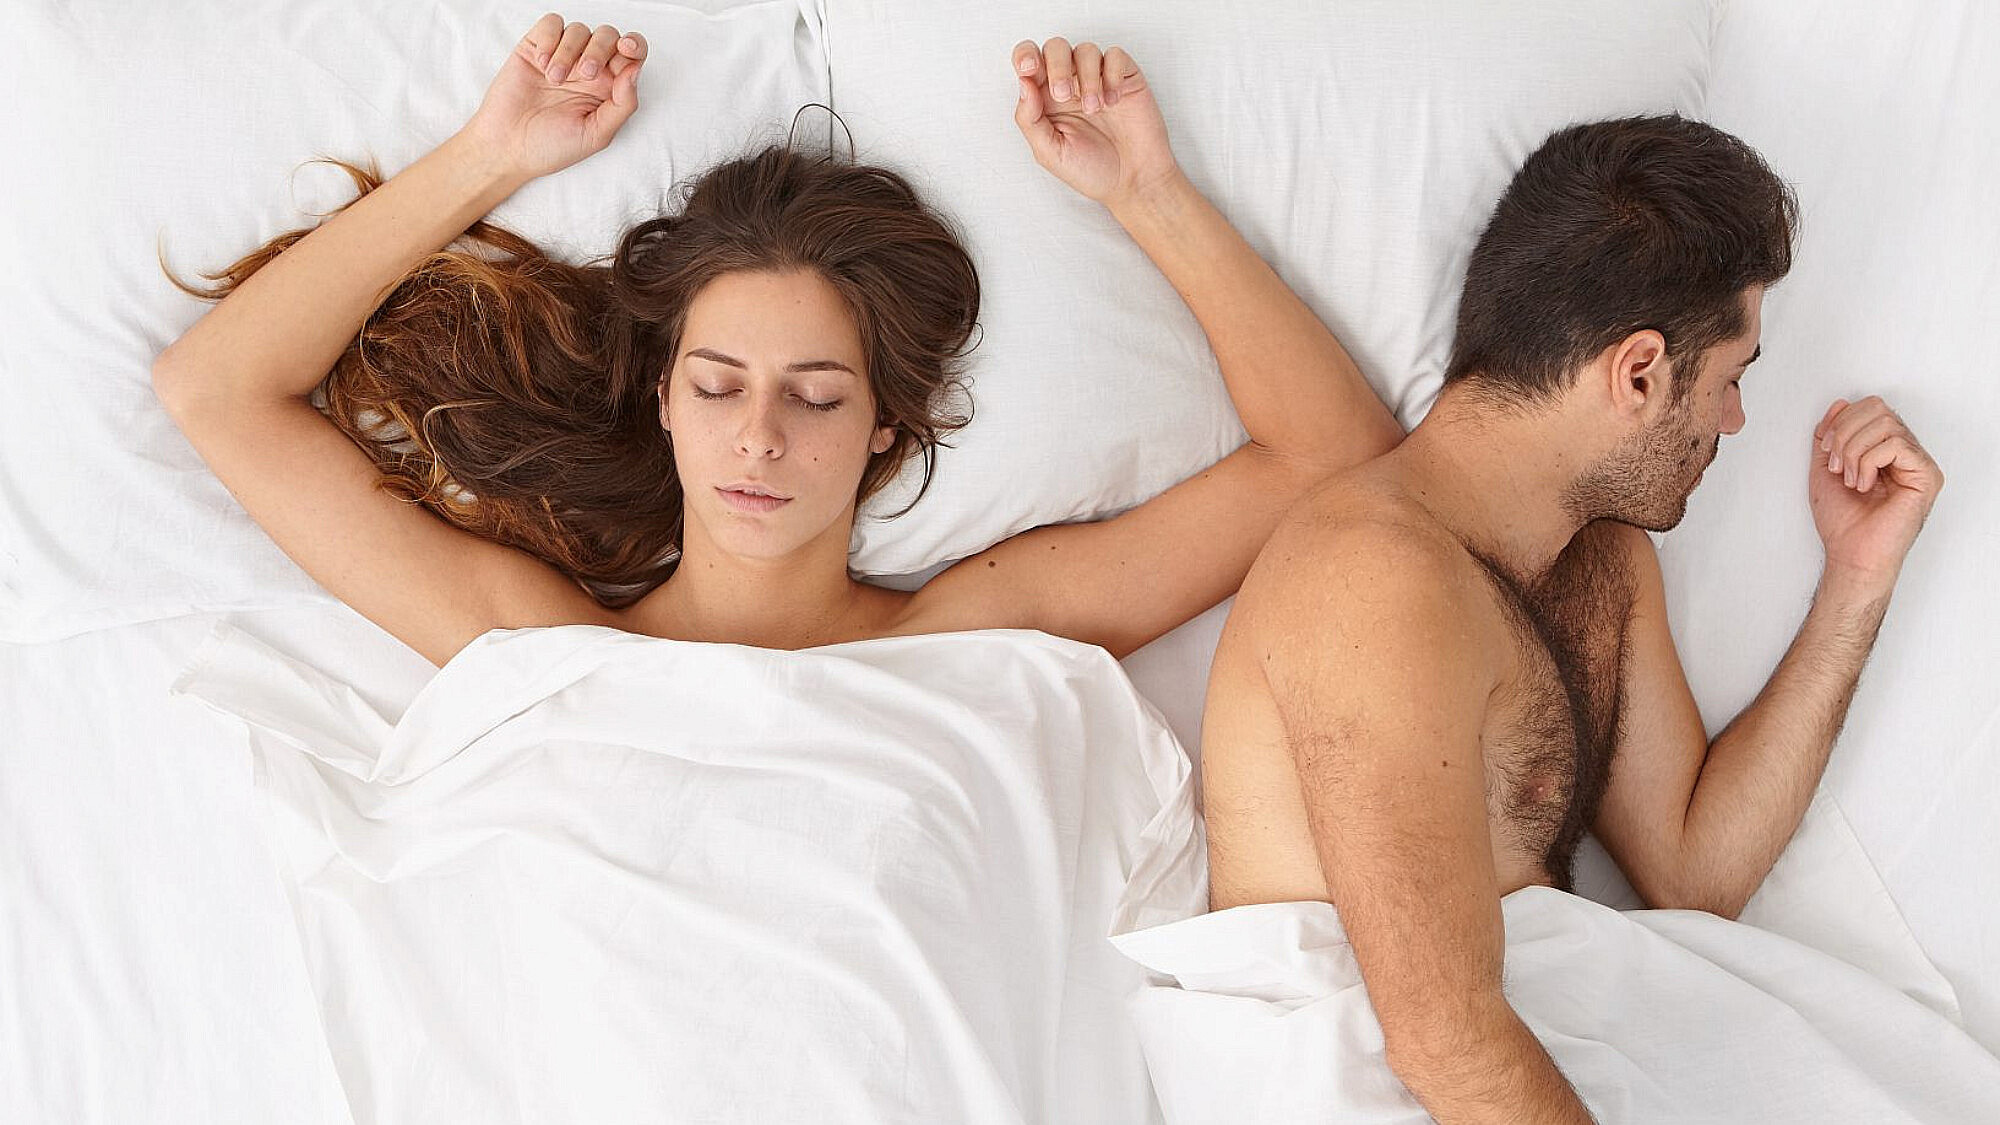 שנעשה וי זריז על משימת הסקס של השבוע? | צילום: Shutterstock